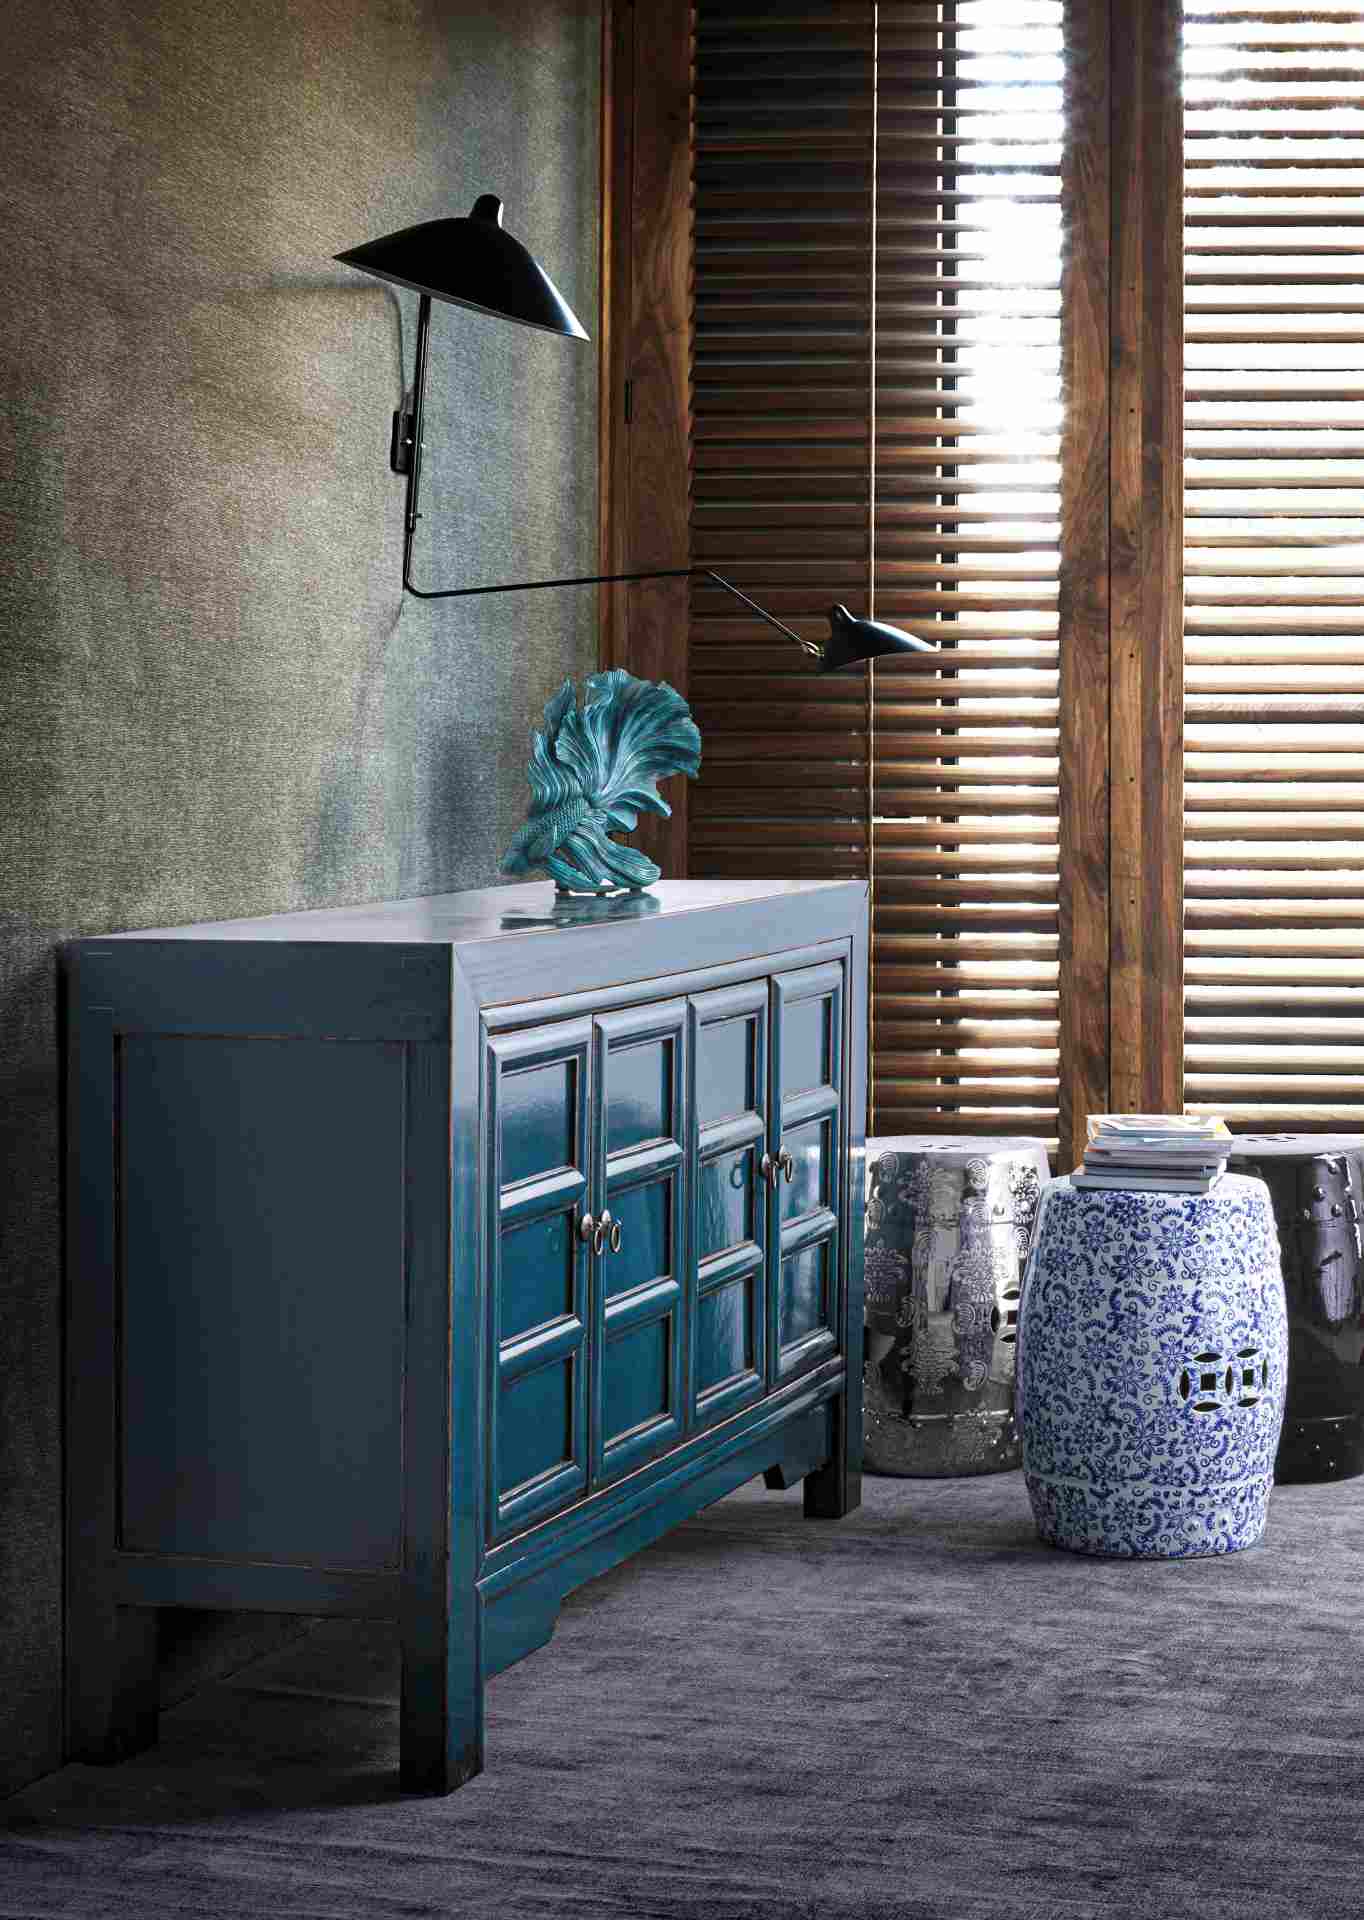 Das Sideboard Jinan überzeugt mit seinem klassischen Design. Gefertigt wurde es aus Ulmen-Holz, welches einen blauen Farbton besitzt. Das Gestell ist auch aus Ulmen-Holz. Das Sideboard verfügt über vier Türen. Die Breite beträgt 133 cm.